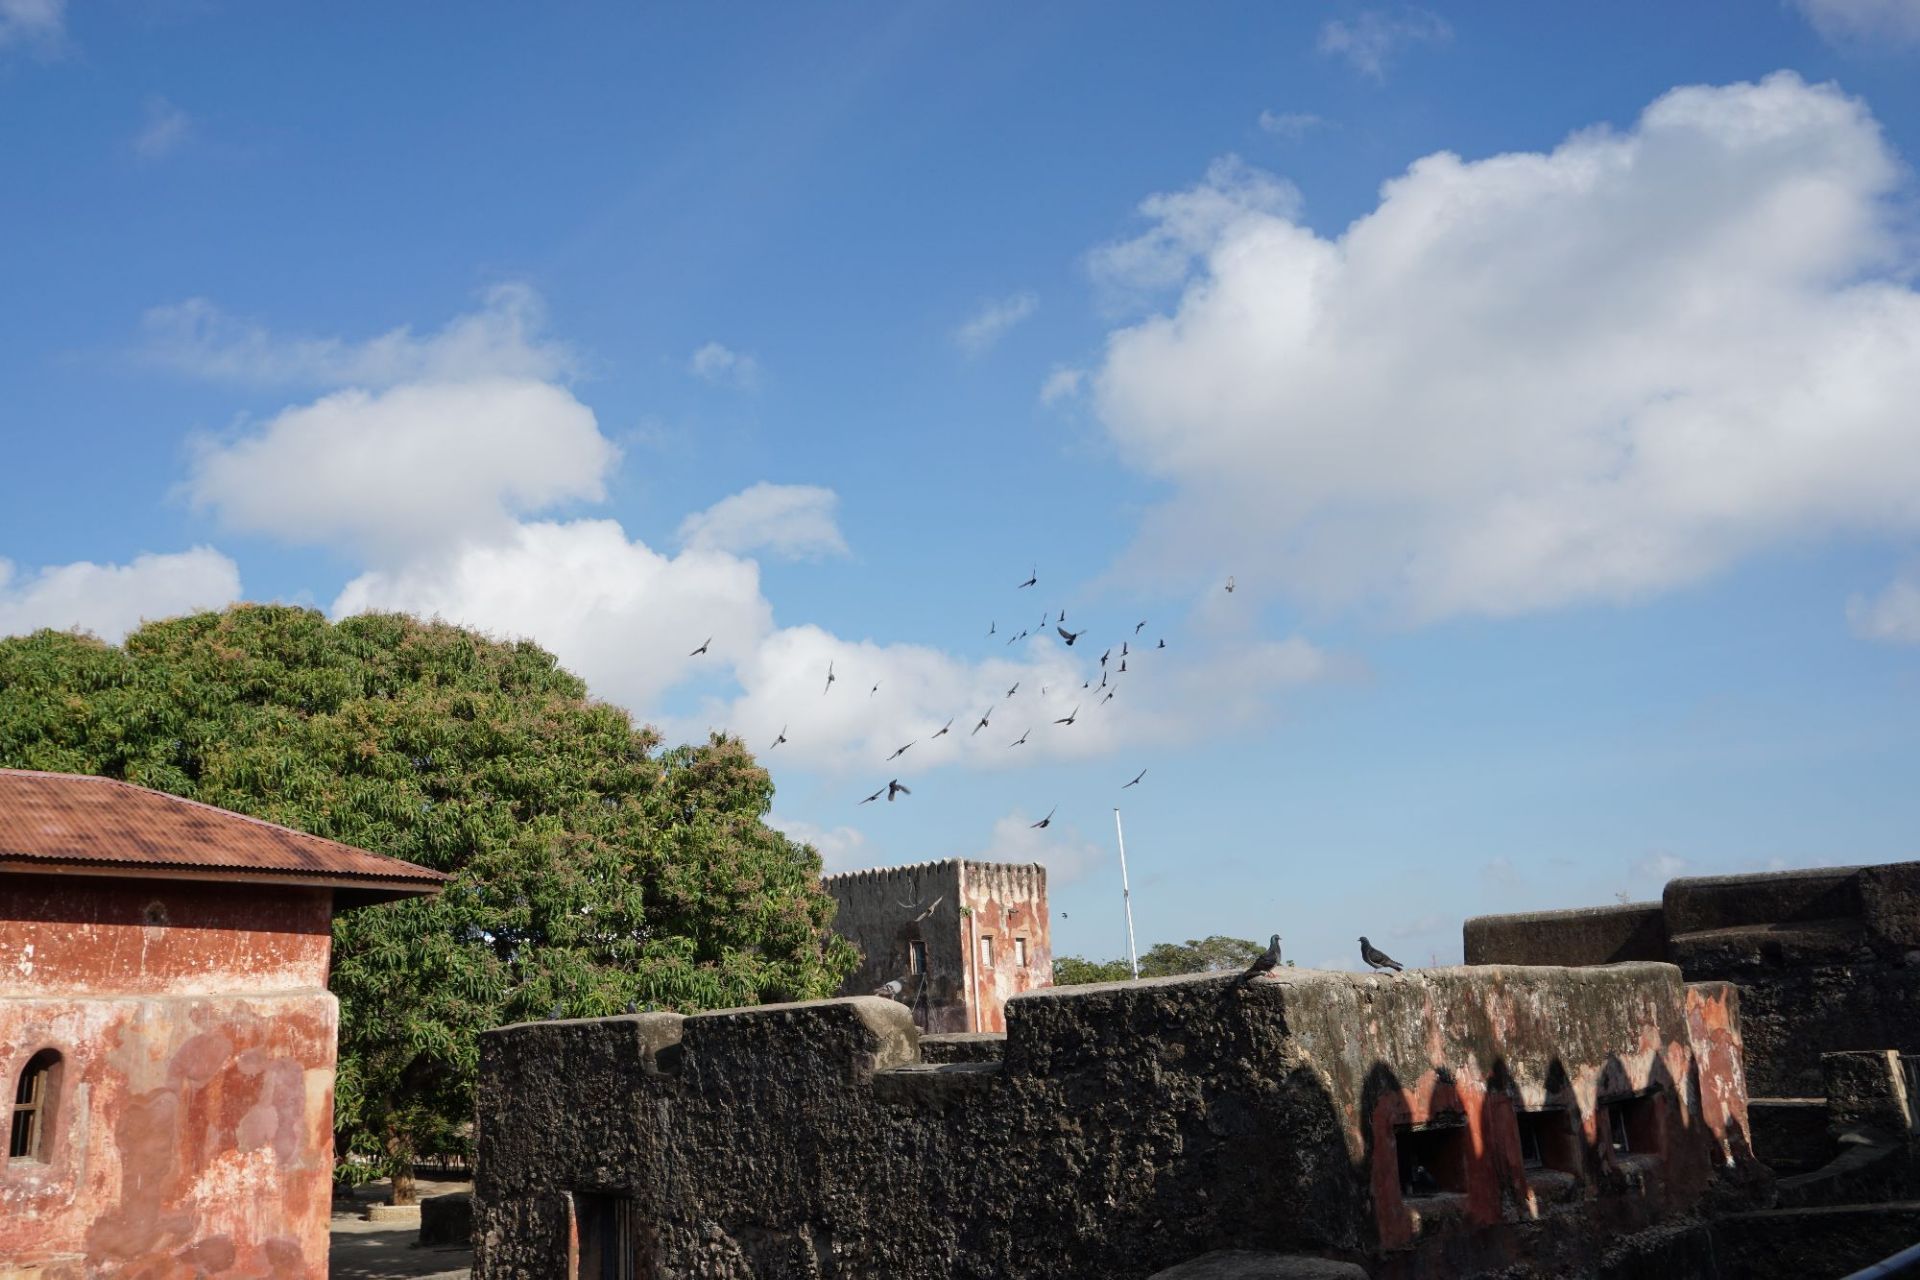 肯尼亚蒙巴萨市的耶稣堡，是个易守难攻的军事要塞，扼守着蒙巴萨港。